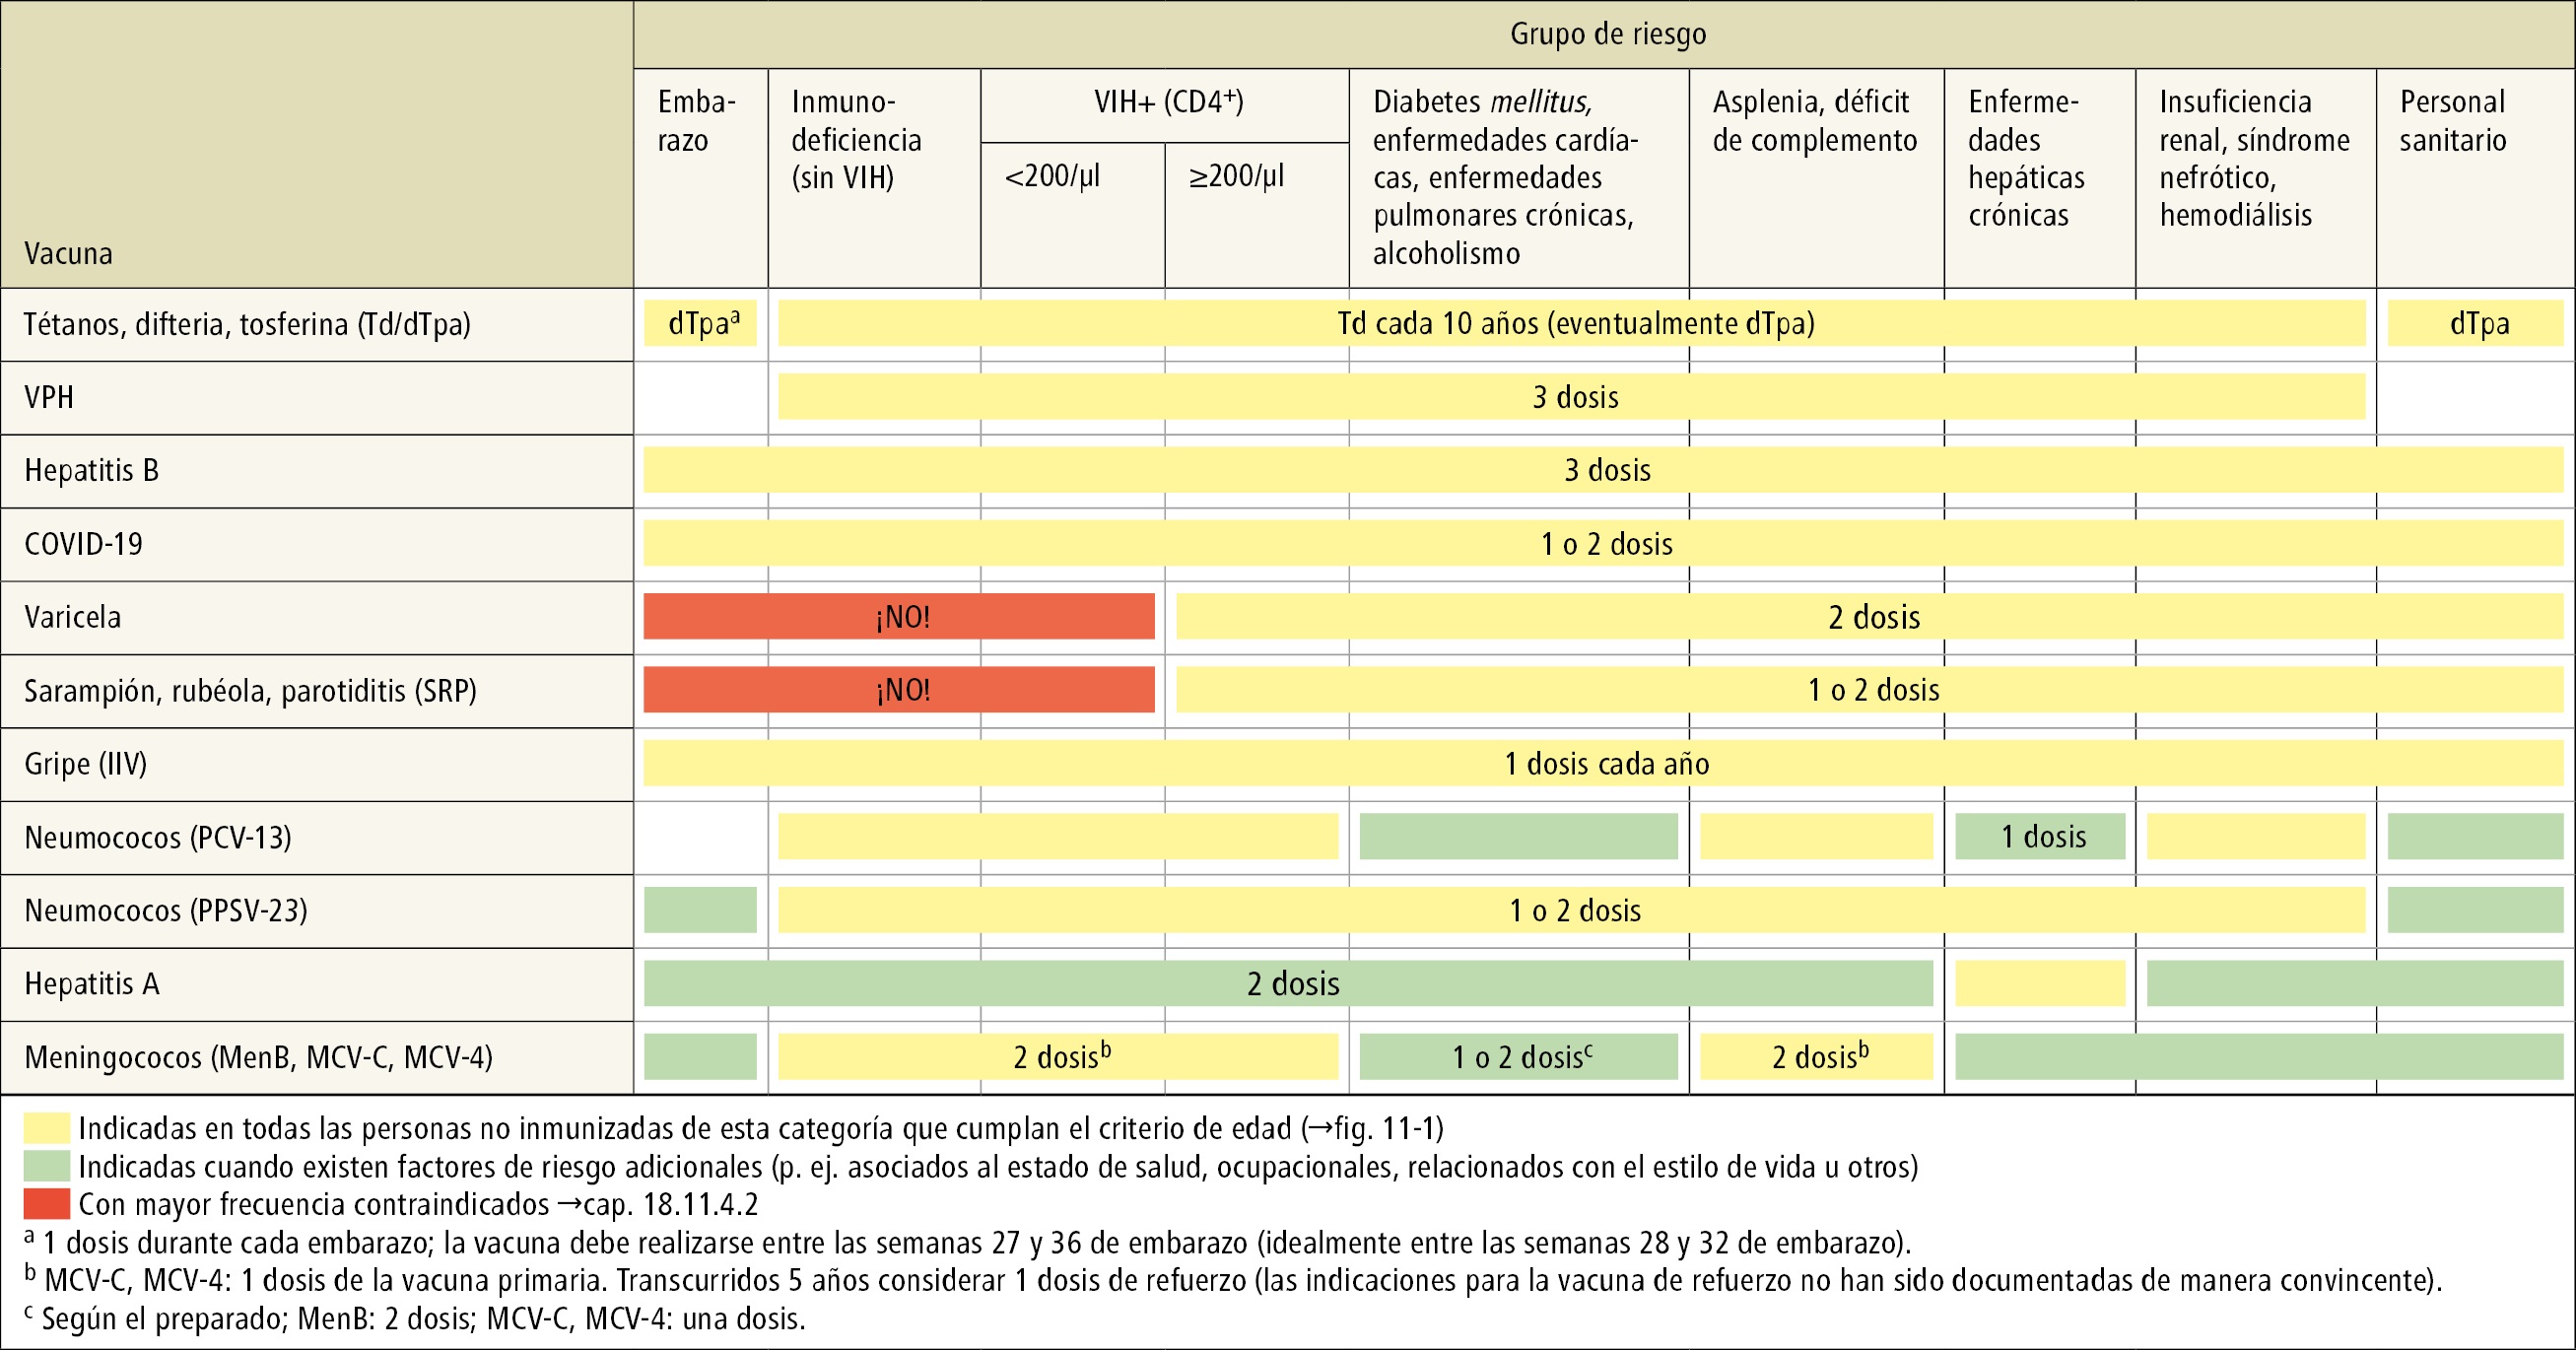    Fig. 19.11-2.  Esquema del programa de vacunación para adultos, según el grupo de riesgo (información detallada →texto) 